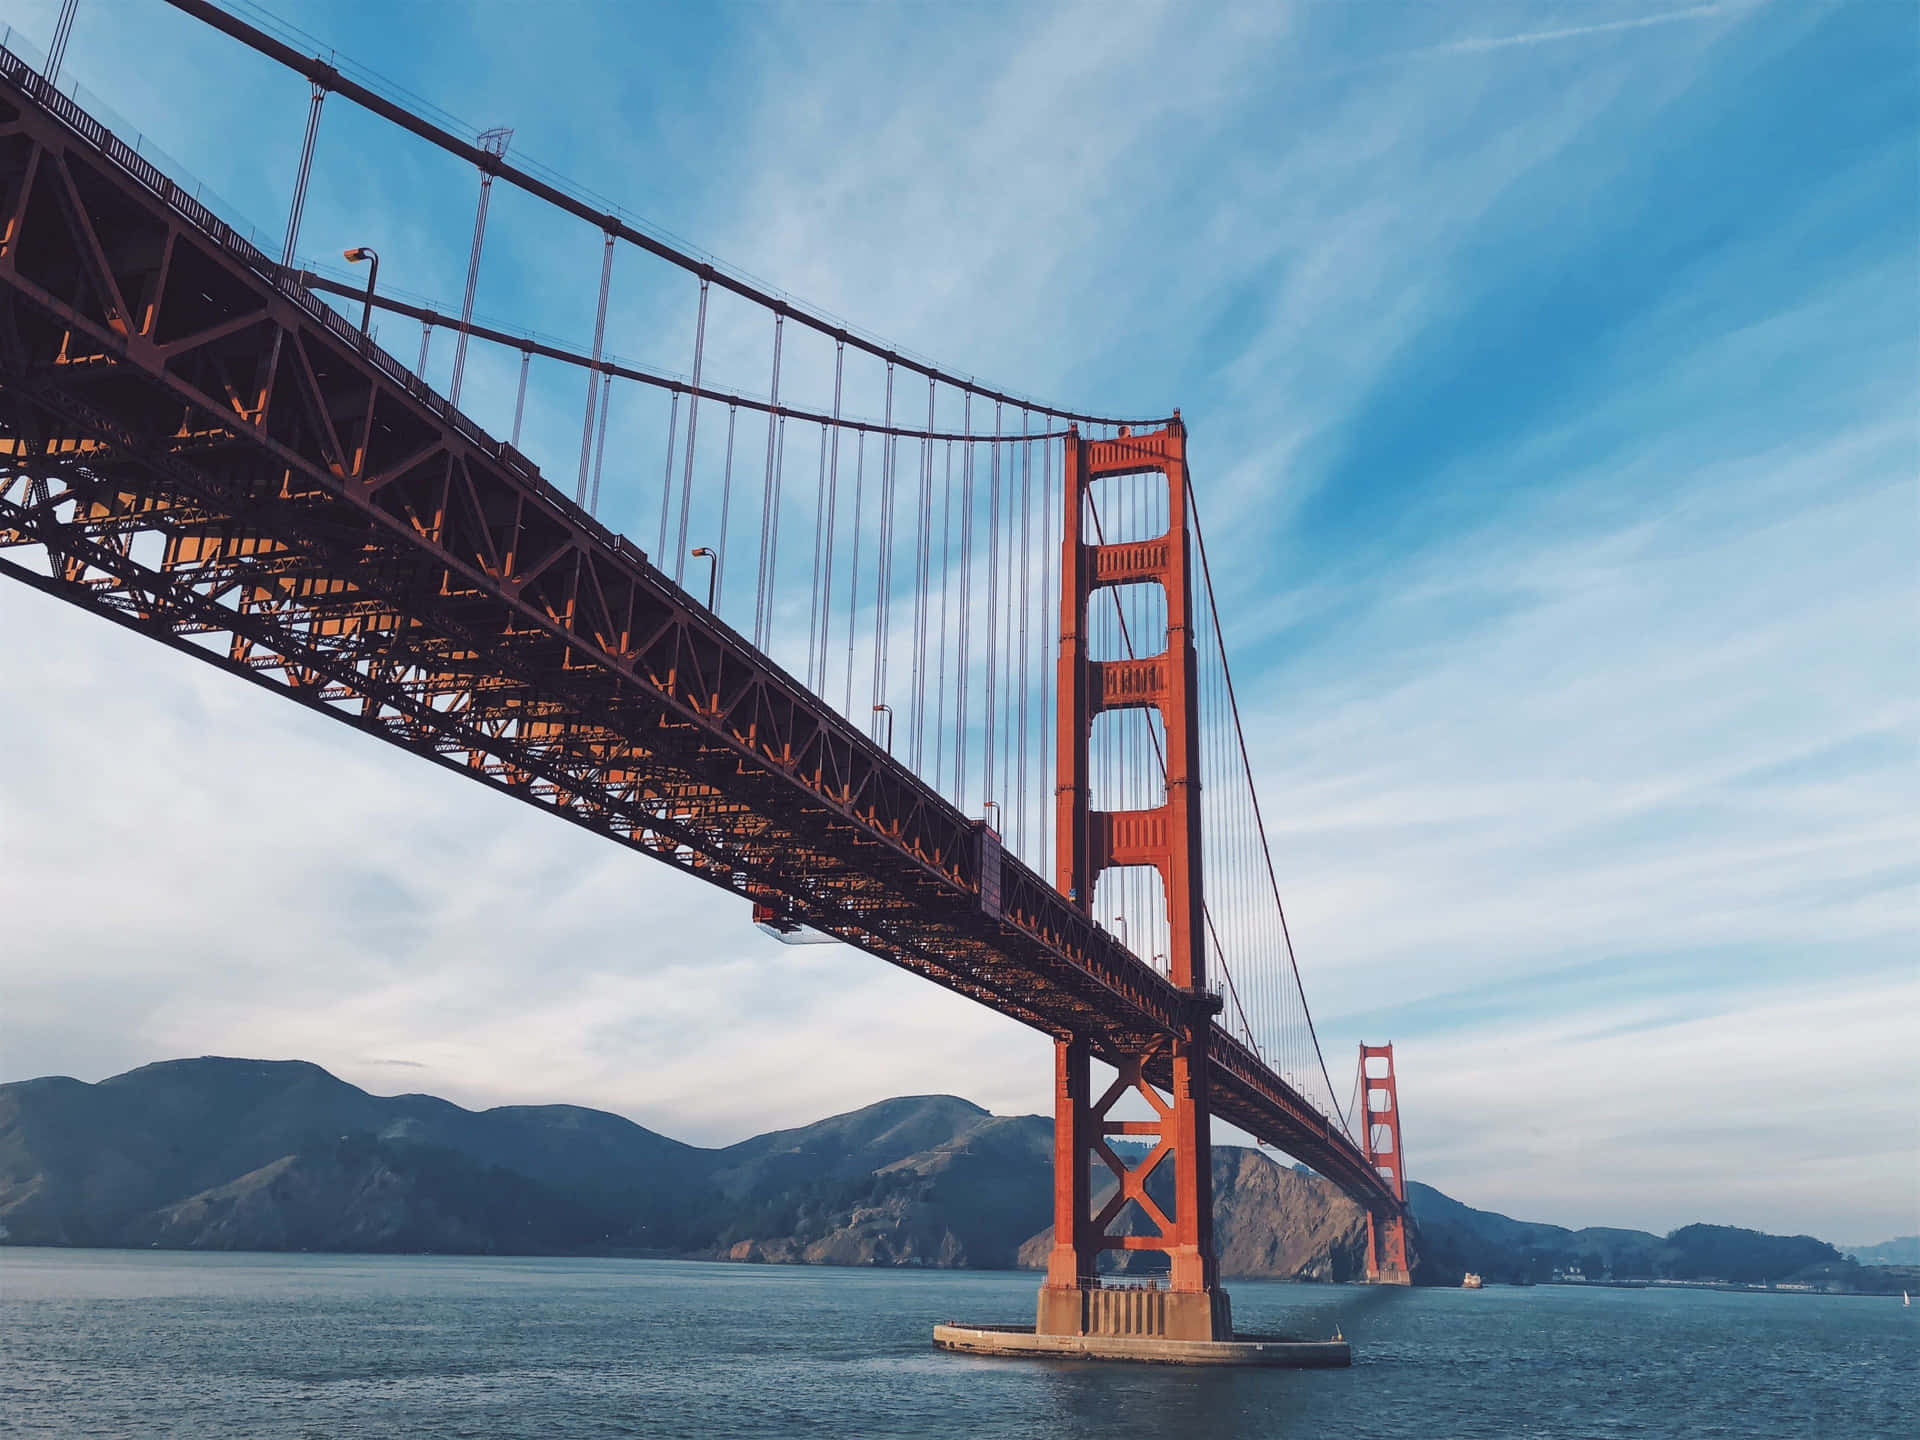 Majestätischegolden Gate Bridge - Bester Hintergrund Für San Francisco